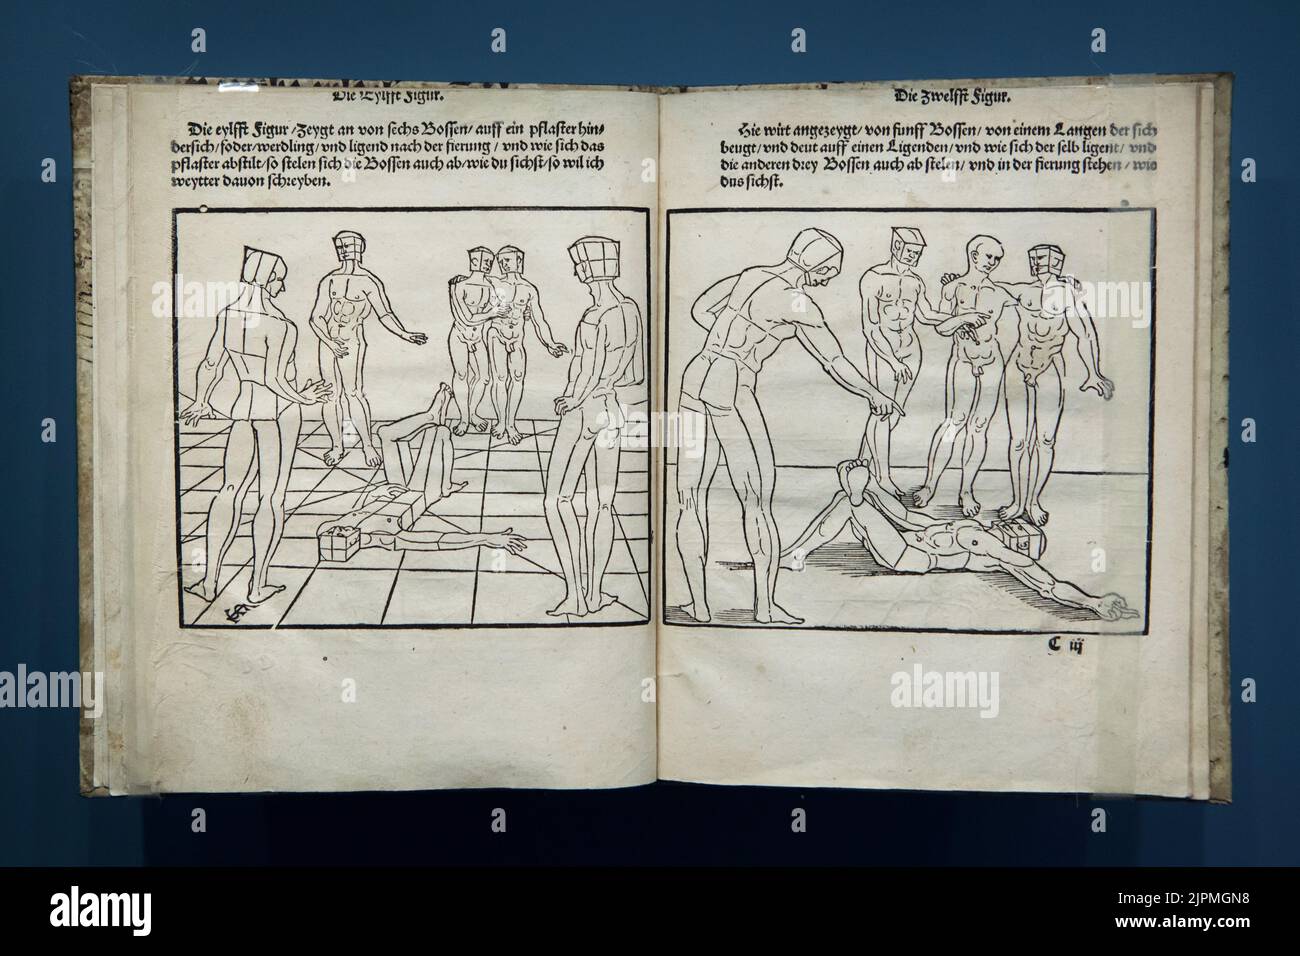 Deux coupes de bois de l'artiste allemand de la Renaissance Erhard Schön (1543) dans son livre intitulé "Underweissung der Proportzion und stellung der possen" ("instruction de proportion et de position des poses") imprimé par Christof Zell (1543) à Nuremberg, Allemagne. Banque D'Images